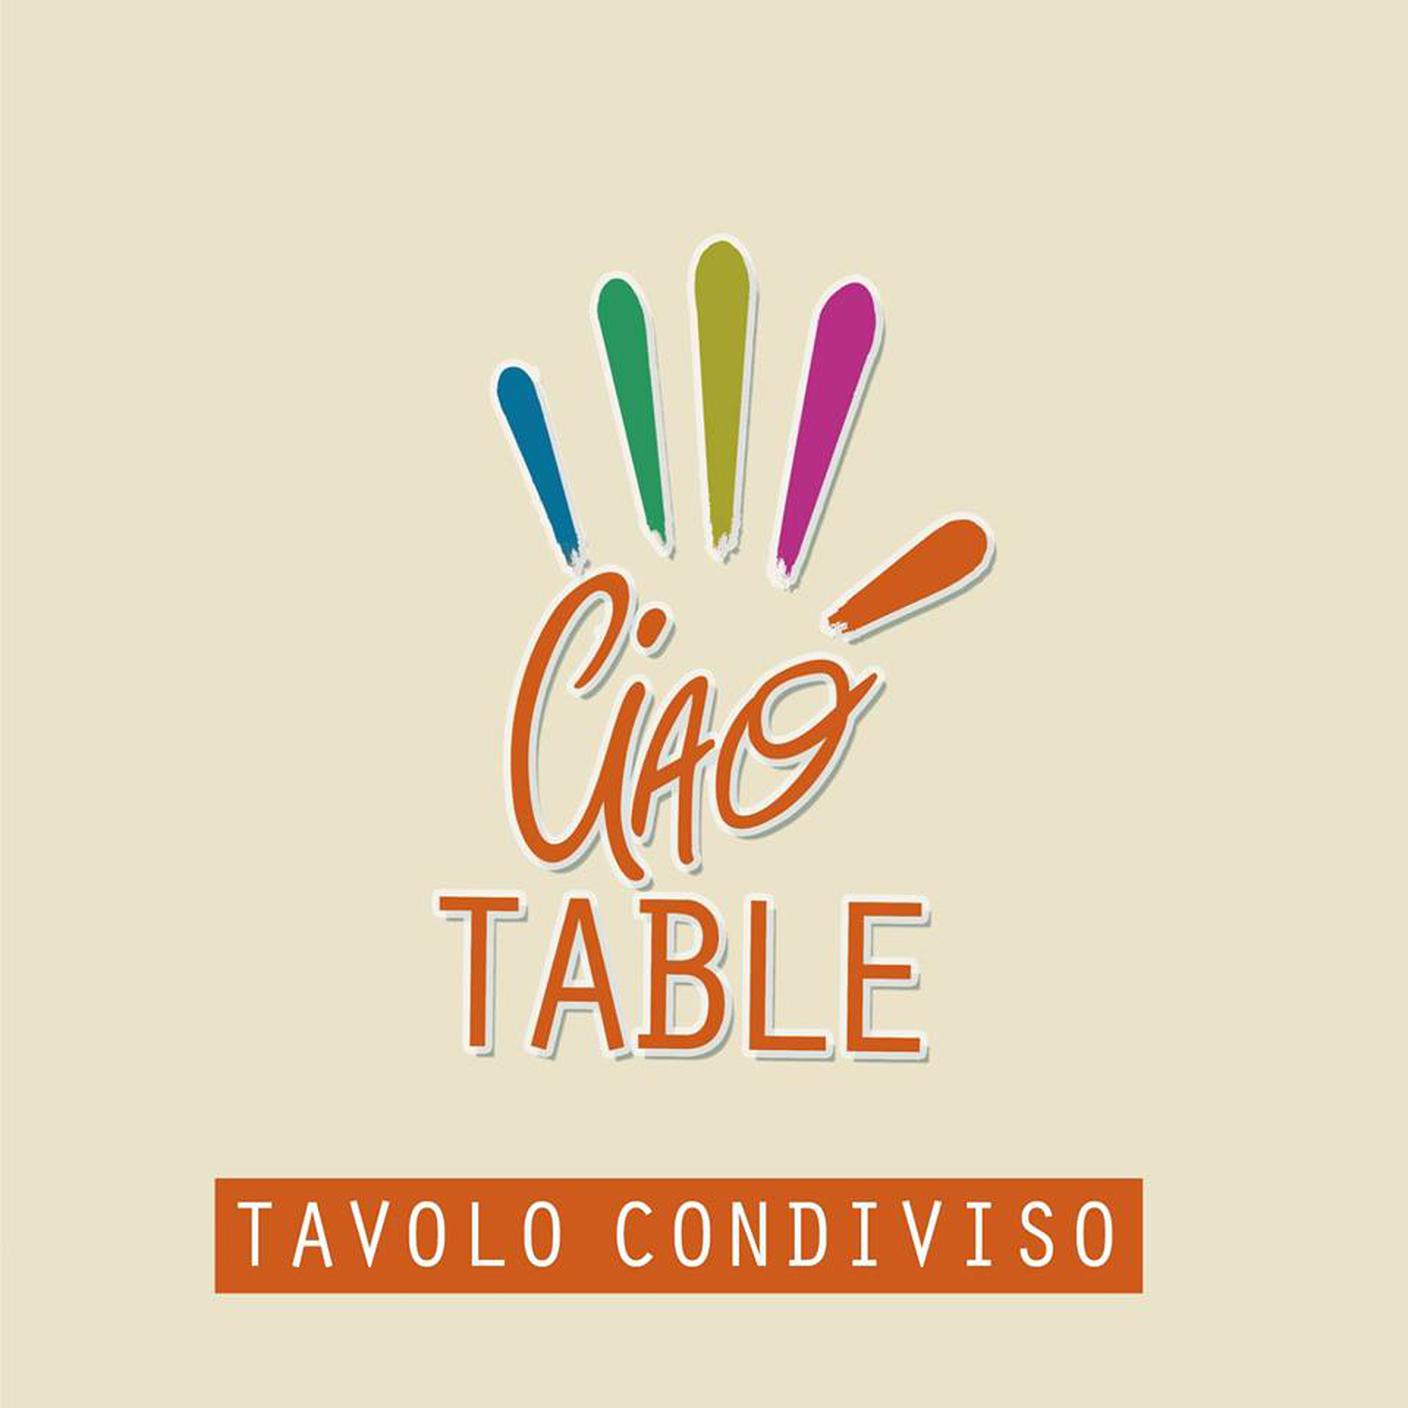 Ciao Table, Tavolo condiviso